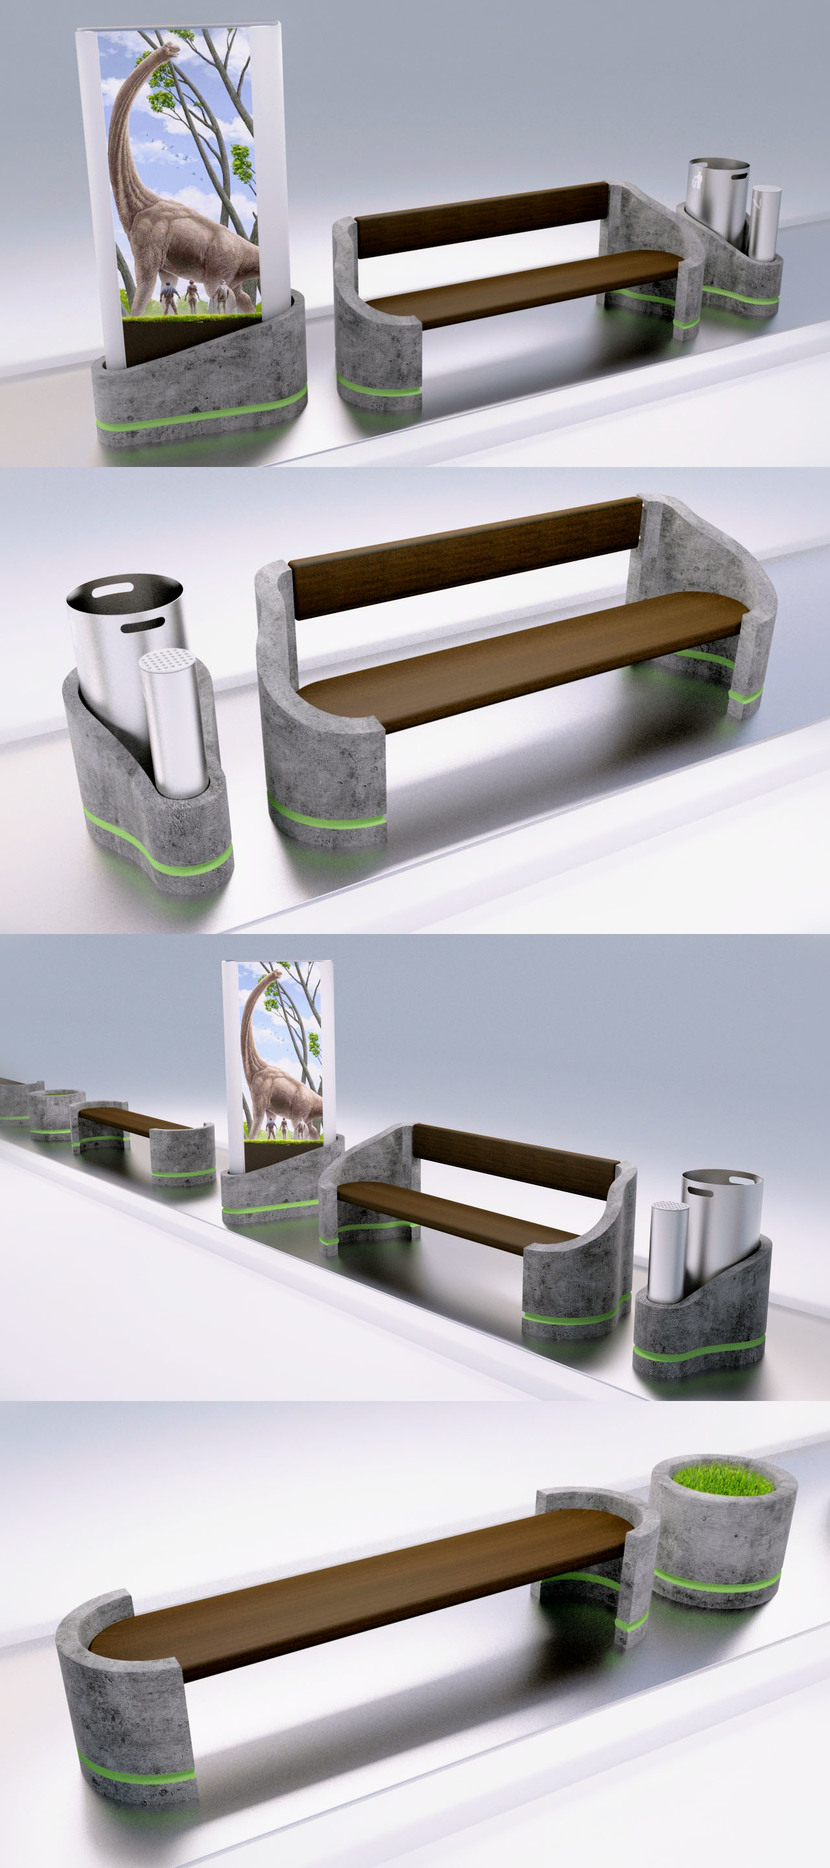 #1 - Разработка эскизов-идей (обычные не 3D) для малых архитектурных форм (скамья, парковый диван, урна, указатель, информационный стенд)